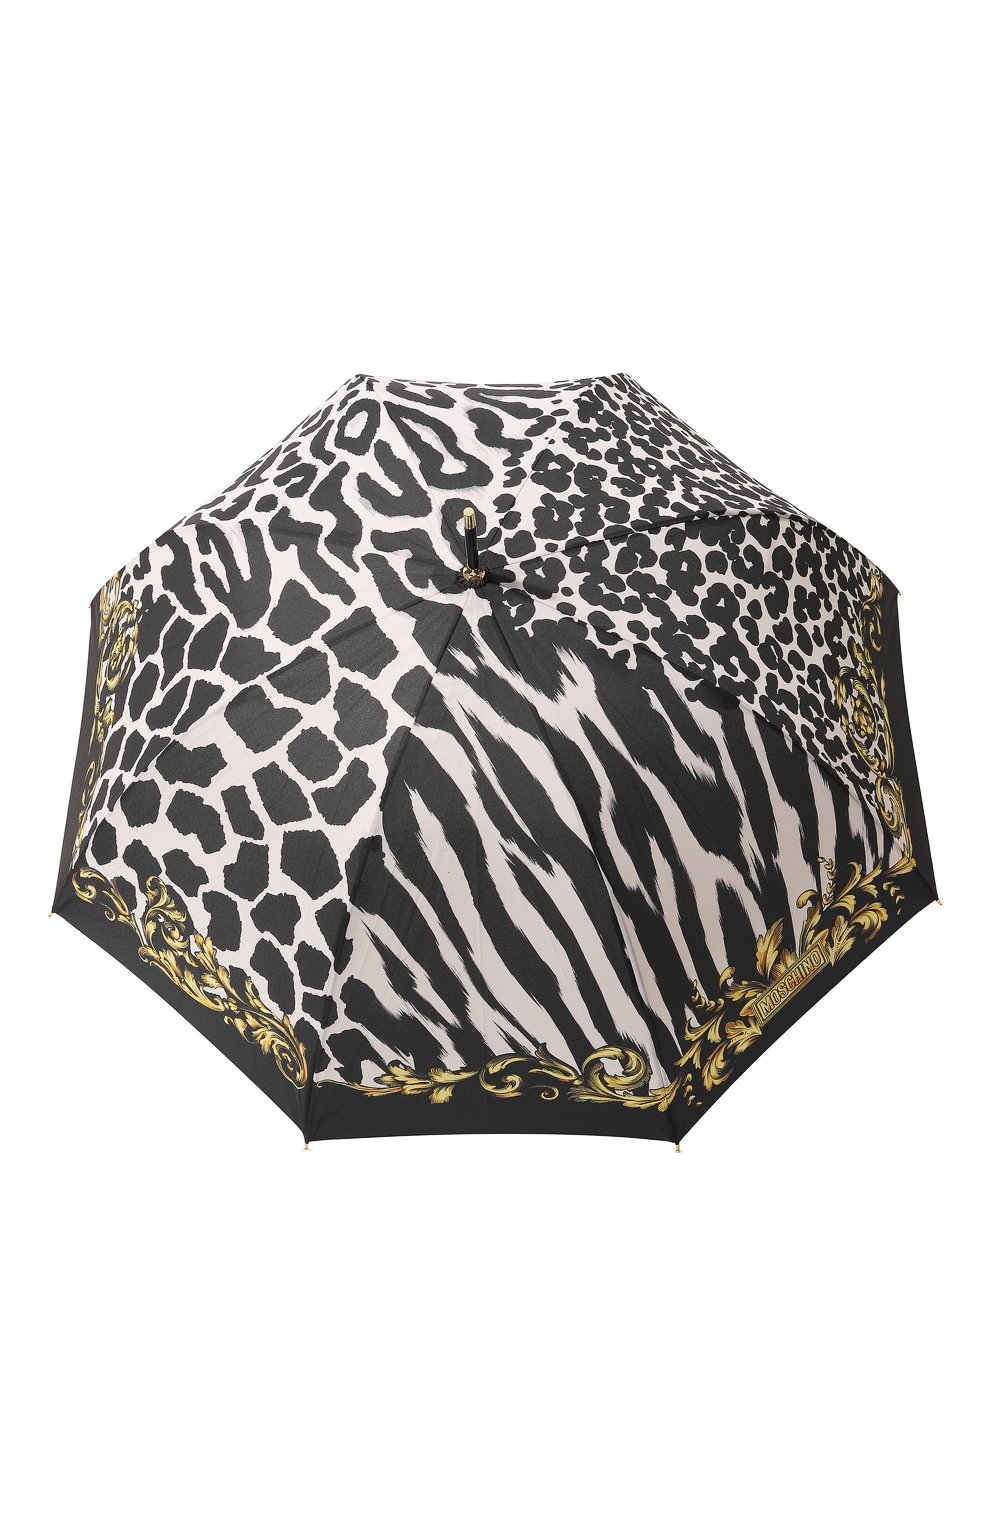 Женский зонт-трость MOSCHINO черно-белого цвета, арт. 8995-63AUT0 | Фото 1 (Материал: Текстиль, Синтетический материал, Металл)